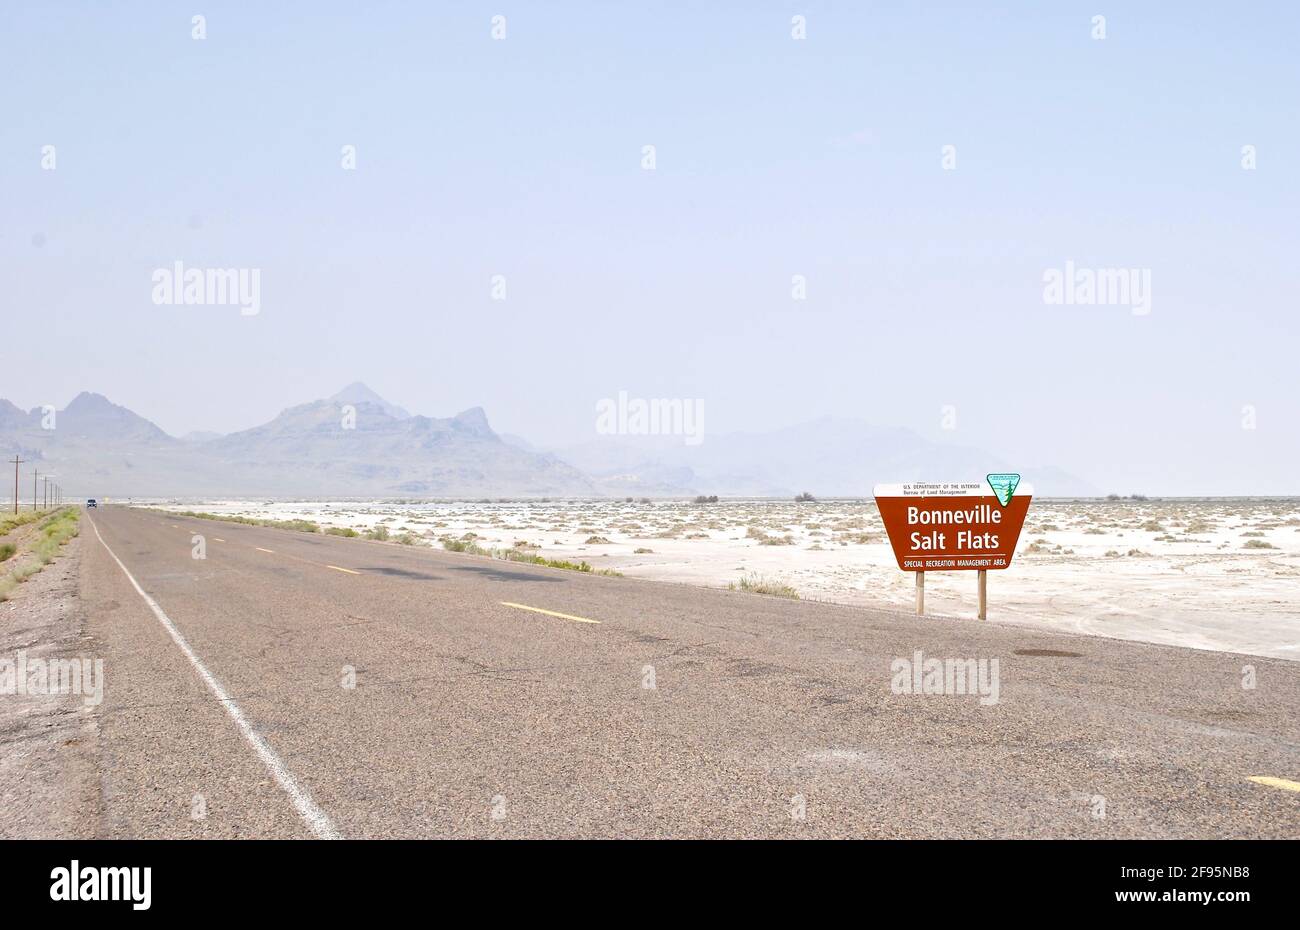 Schild für die Bonneville Salt Flats, eine dicht gepackte Salzpfanne in Utah. Bureau of Land Management öffentliches Land bekannt für Land Geschwindigkeitsrekorde. Stockfoto